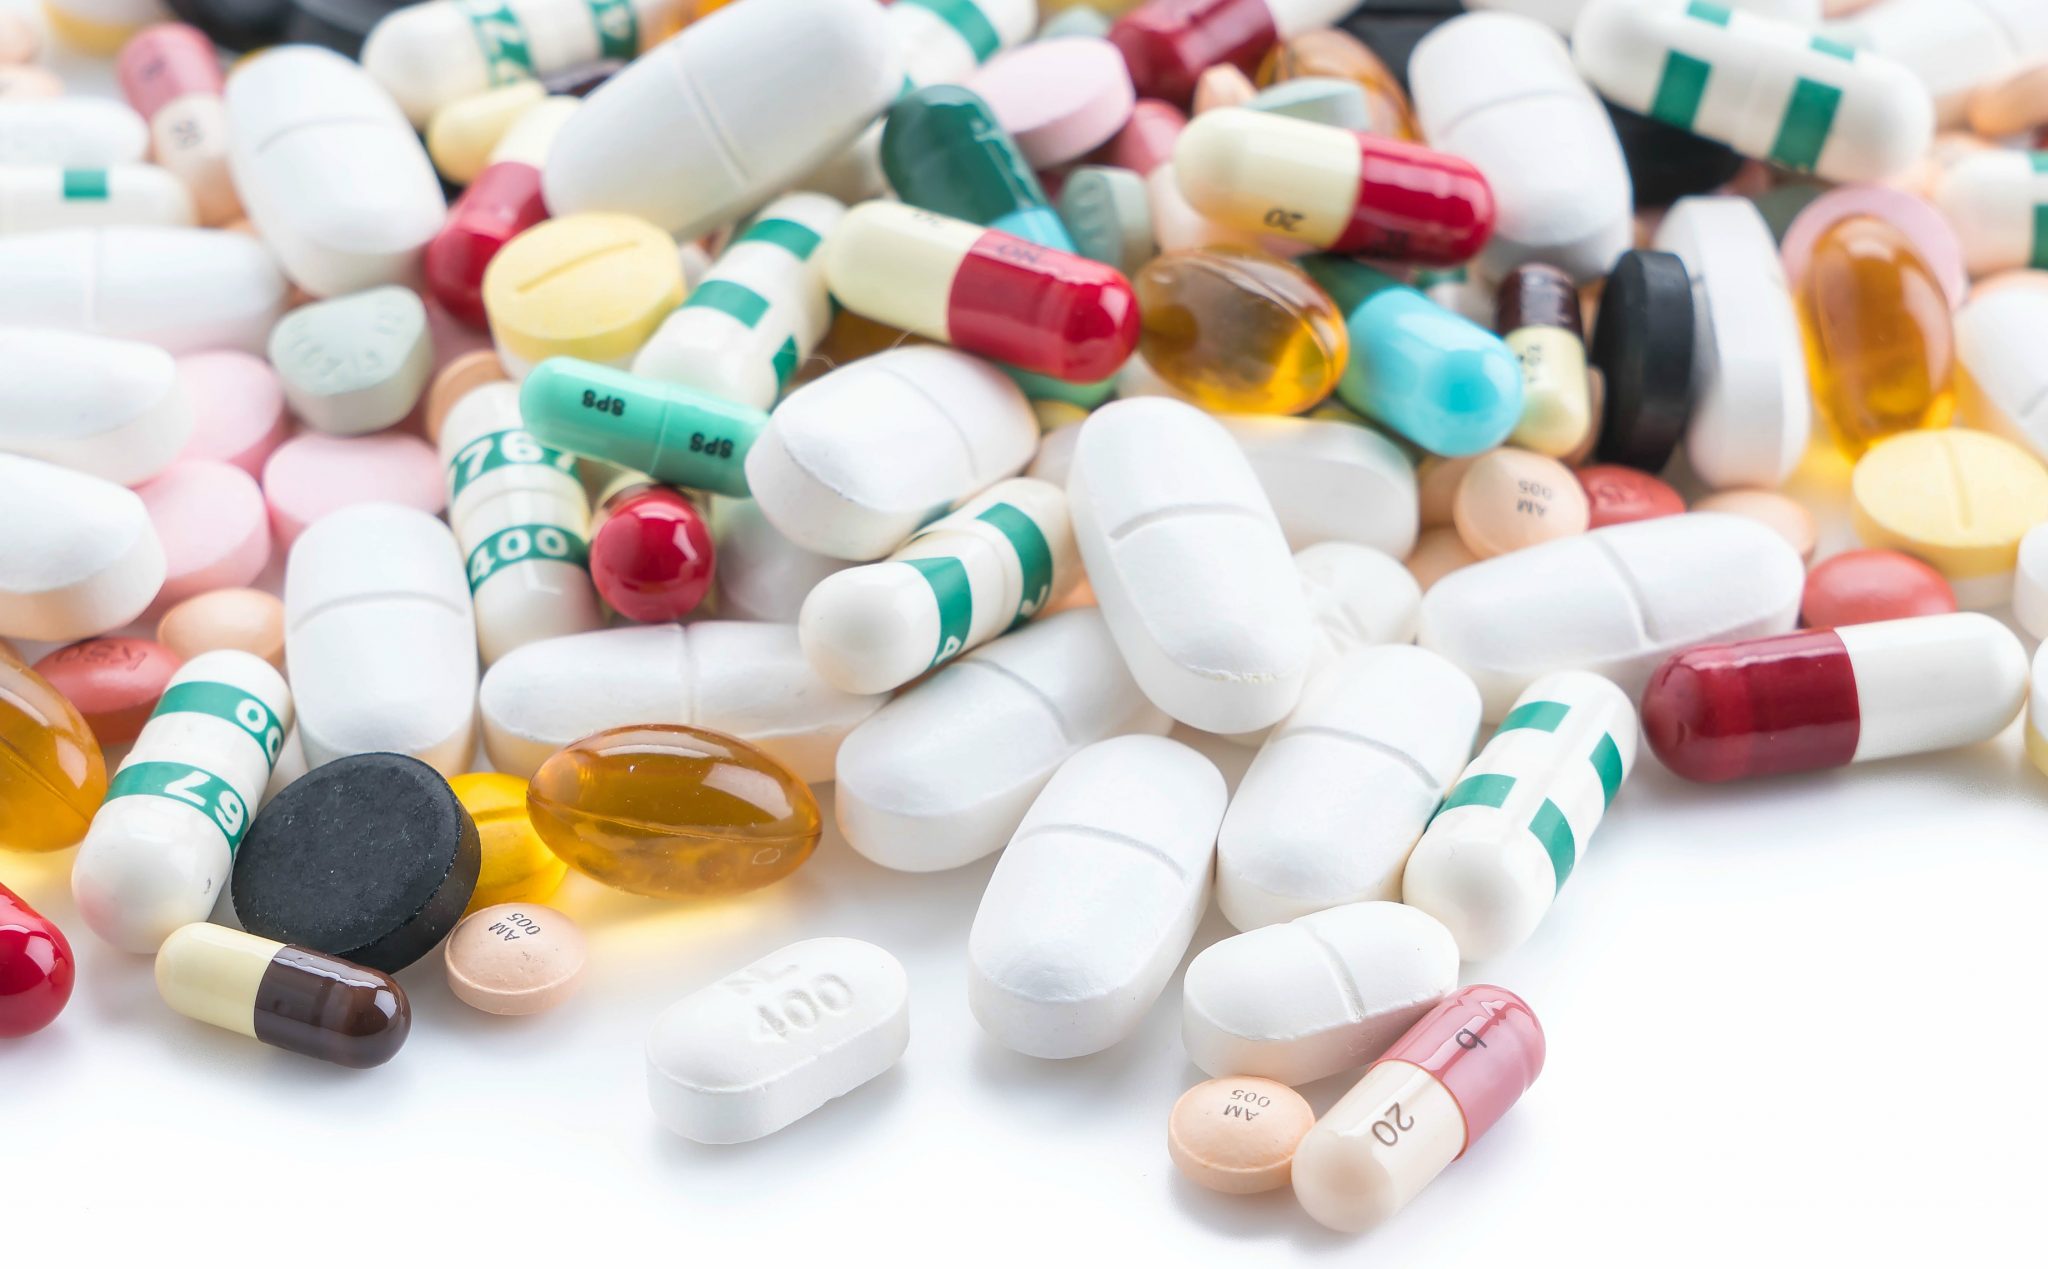 RDC sobre regularidade de medicamentos entra em vigor em janeiro de 2020